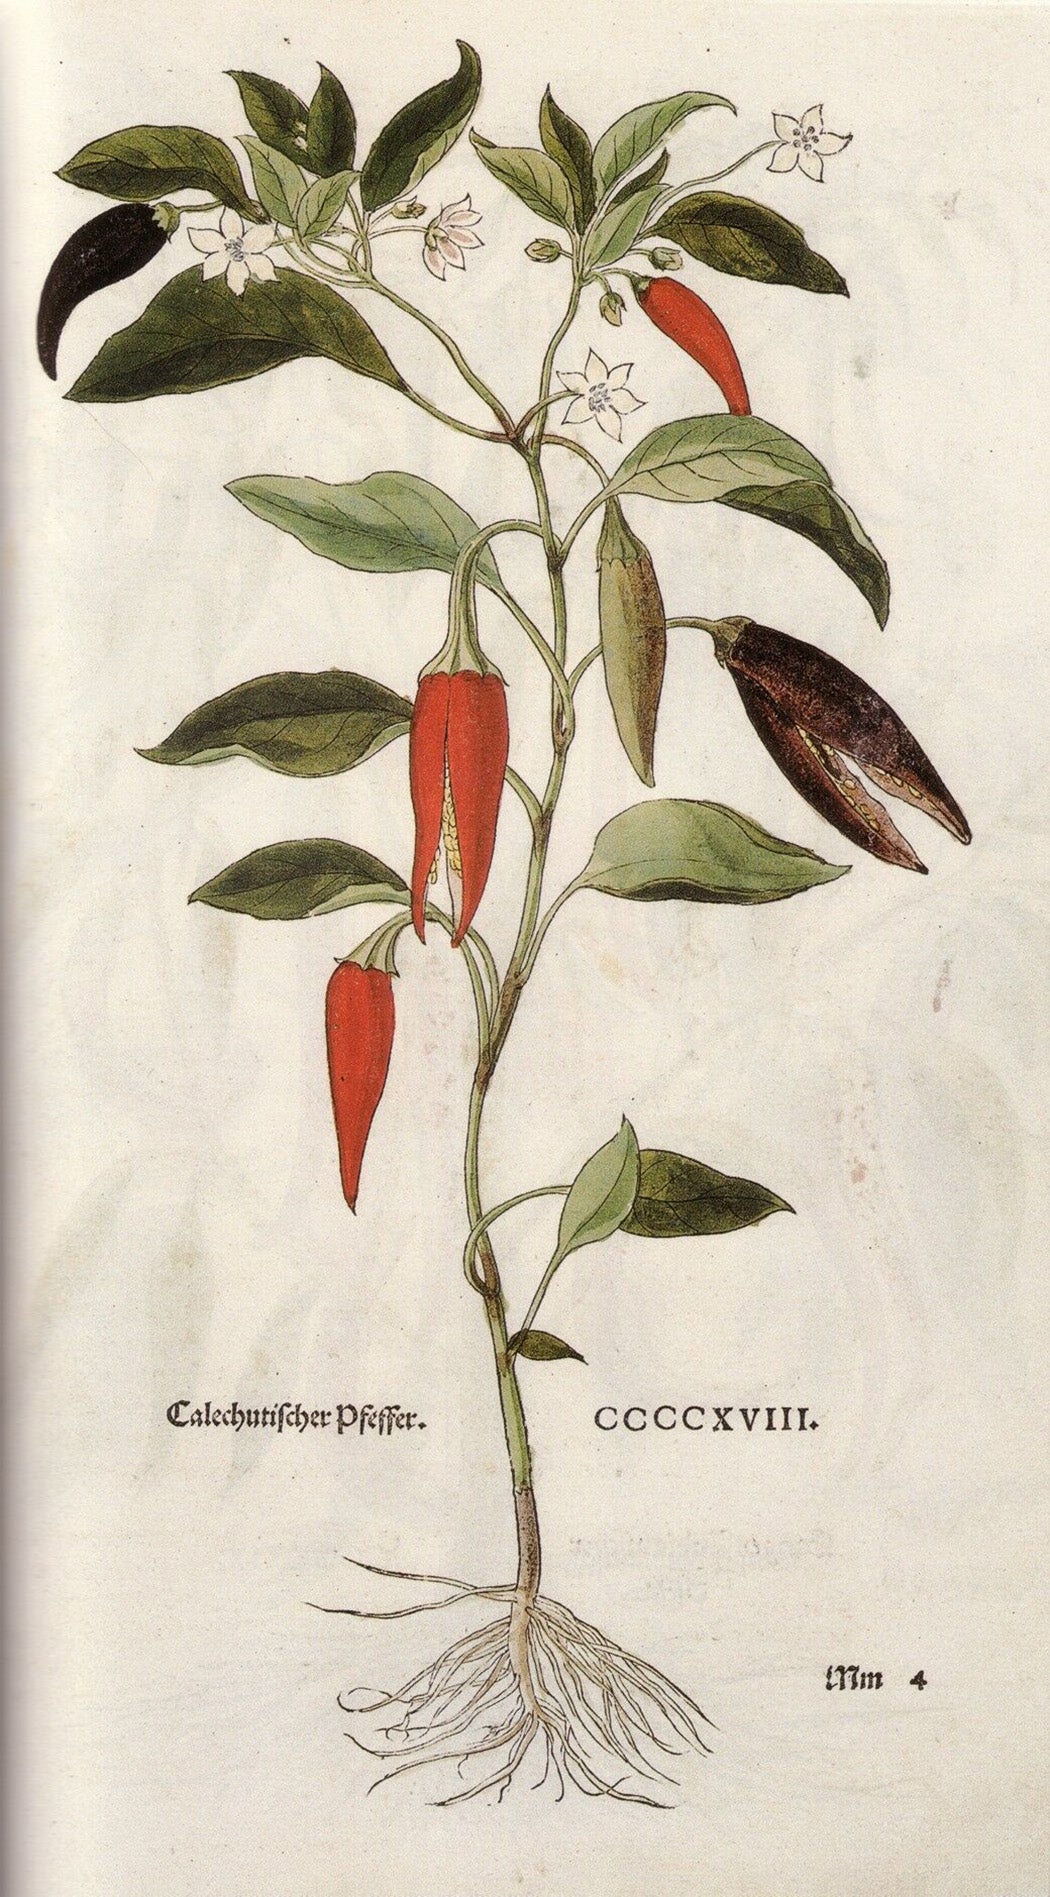 Leonhardt Fuchs’ illustration of “Calicut pepper,” in his herbal De historia stirpium commentarii… (1542)